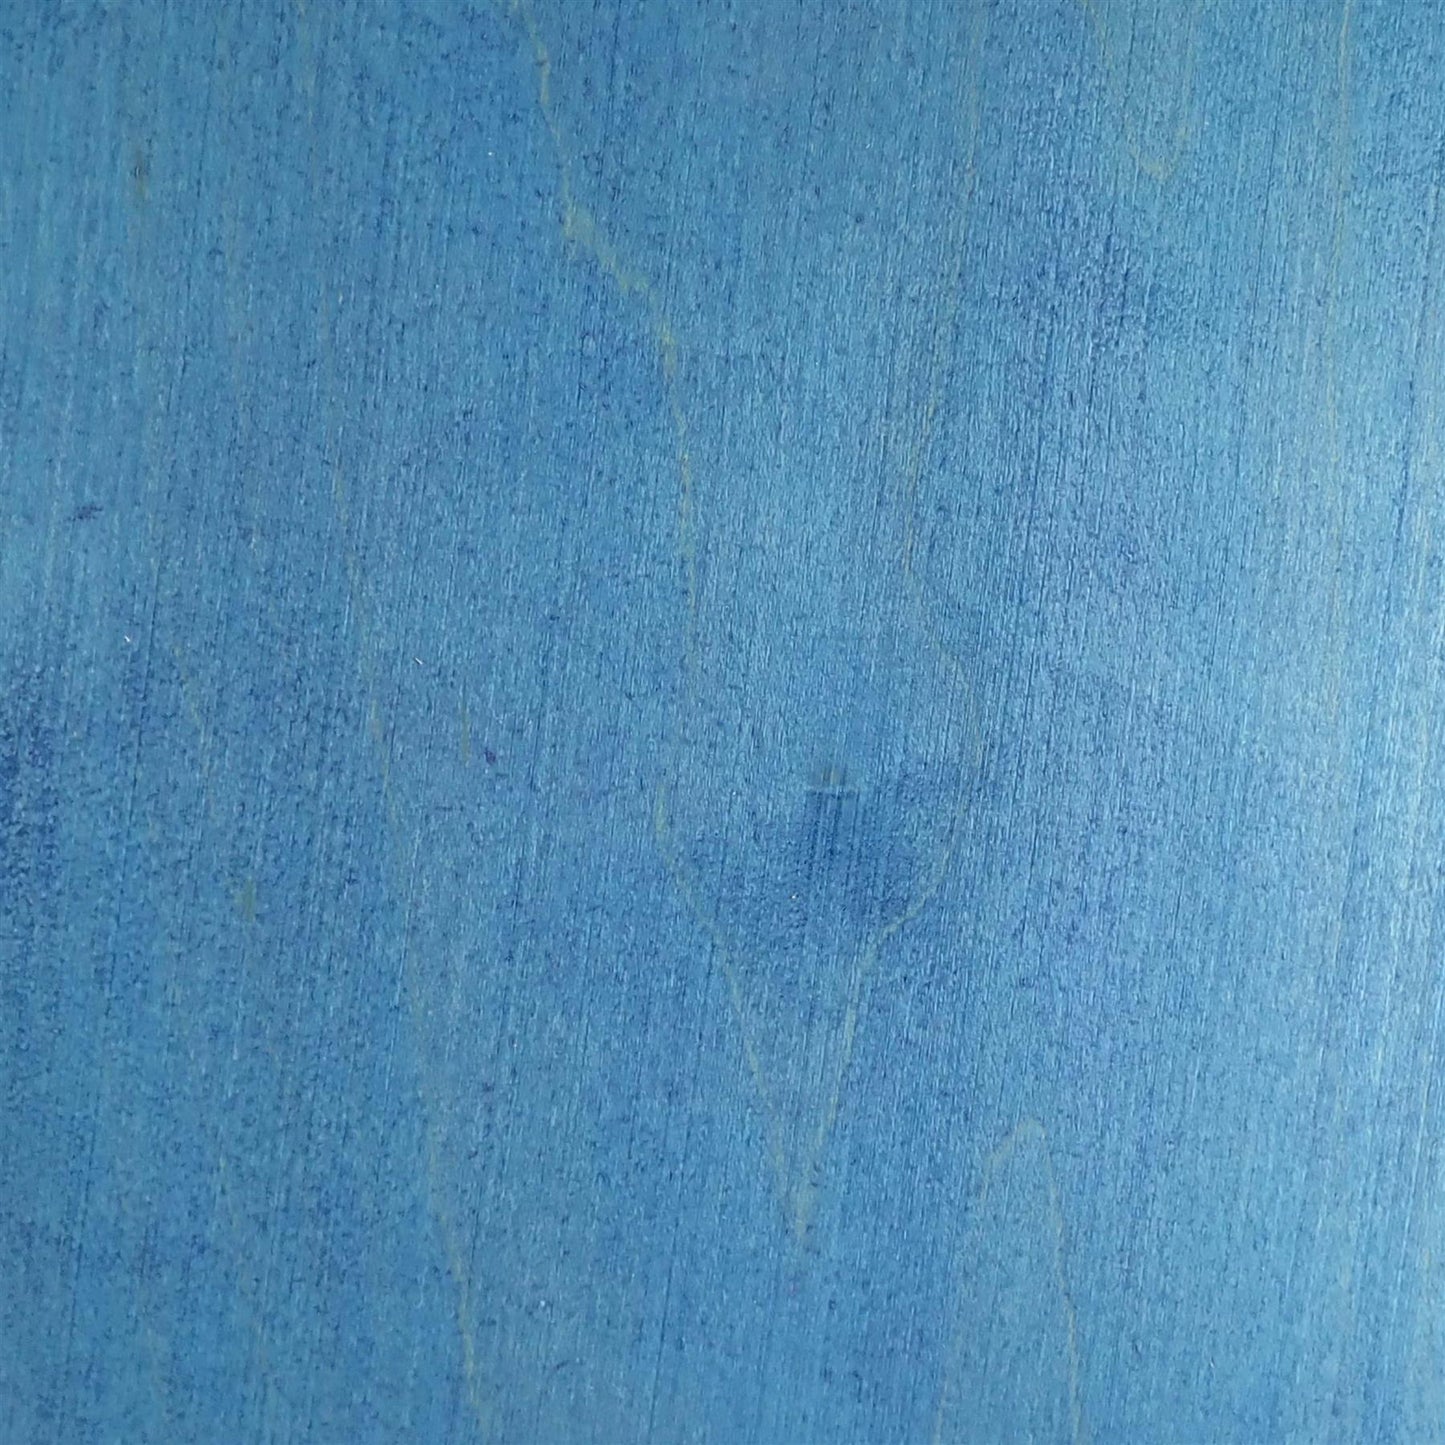 dartfords Lavendar Blue Water Soluble Aniline Wood Dye Powder - 28g 1Oz